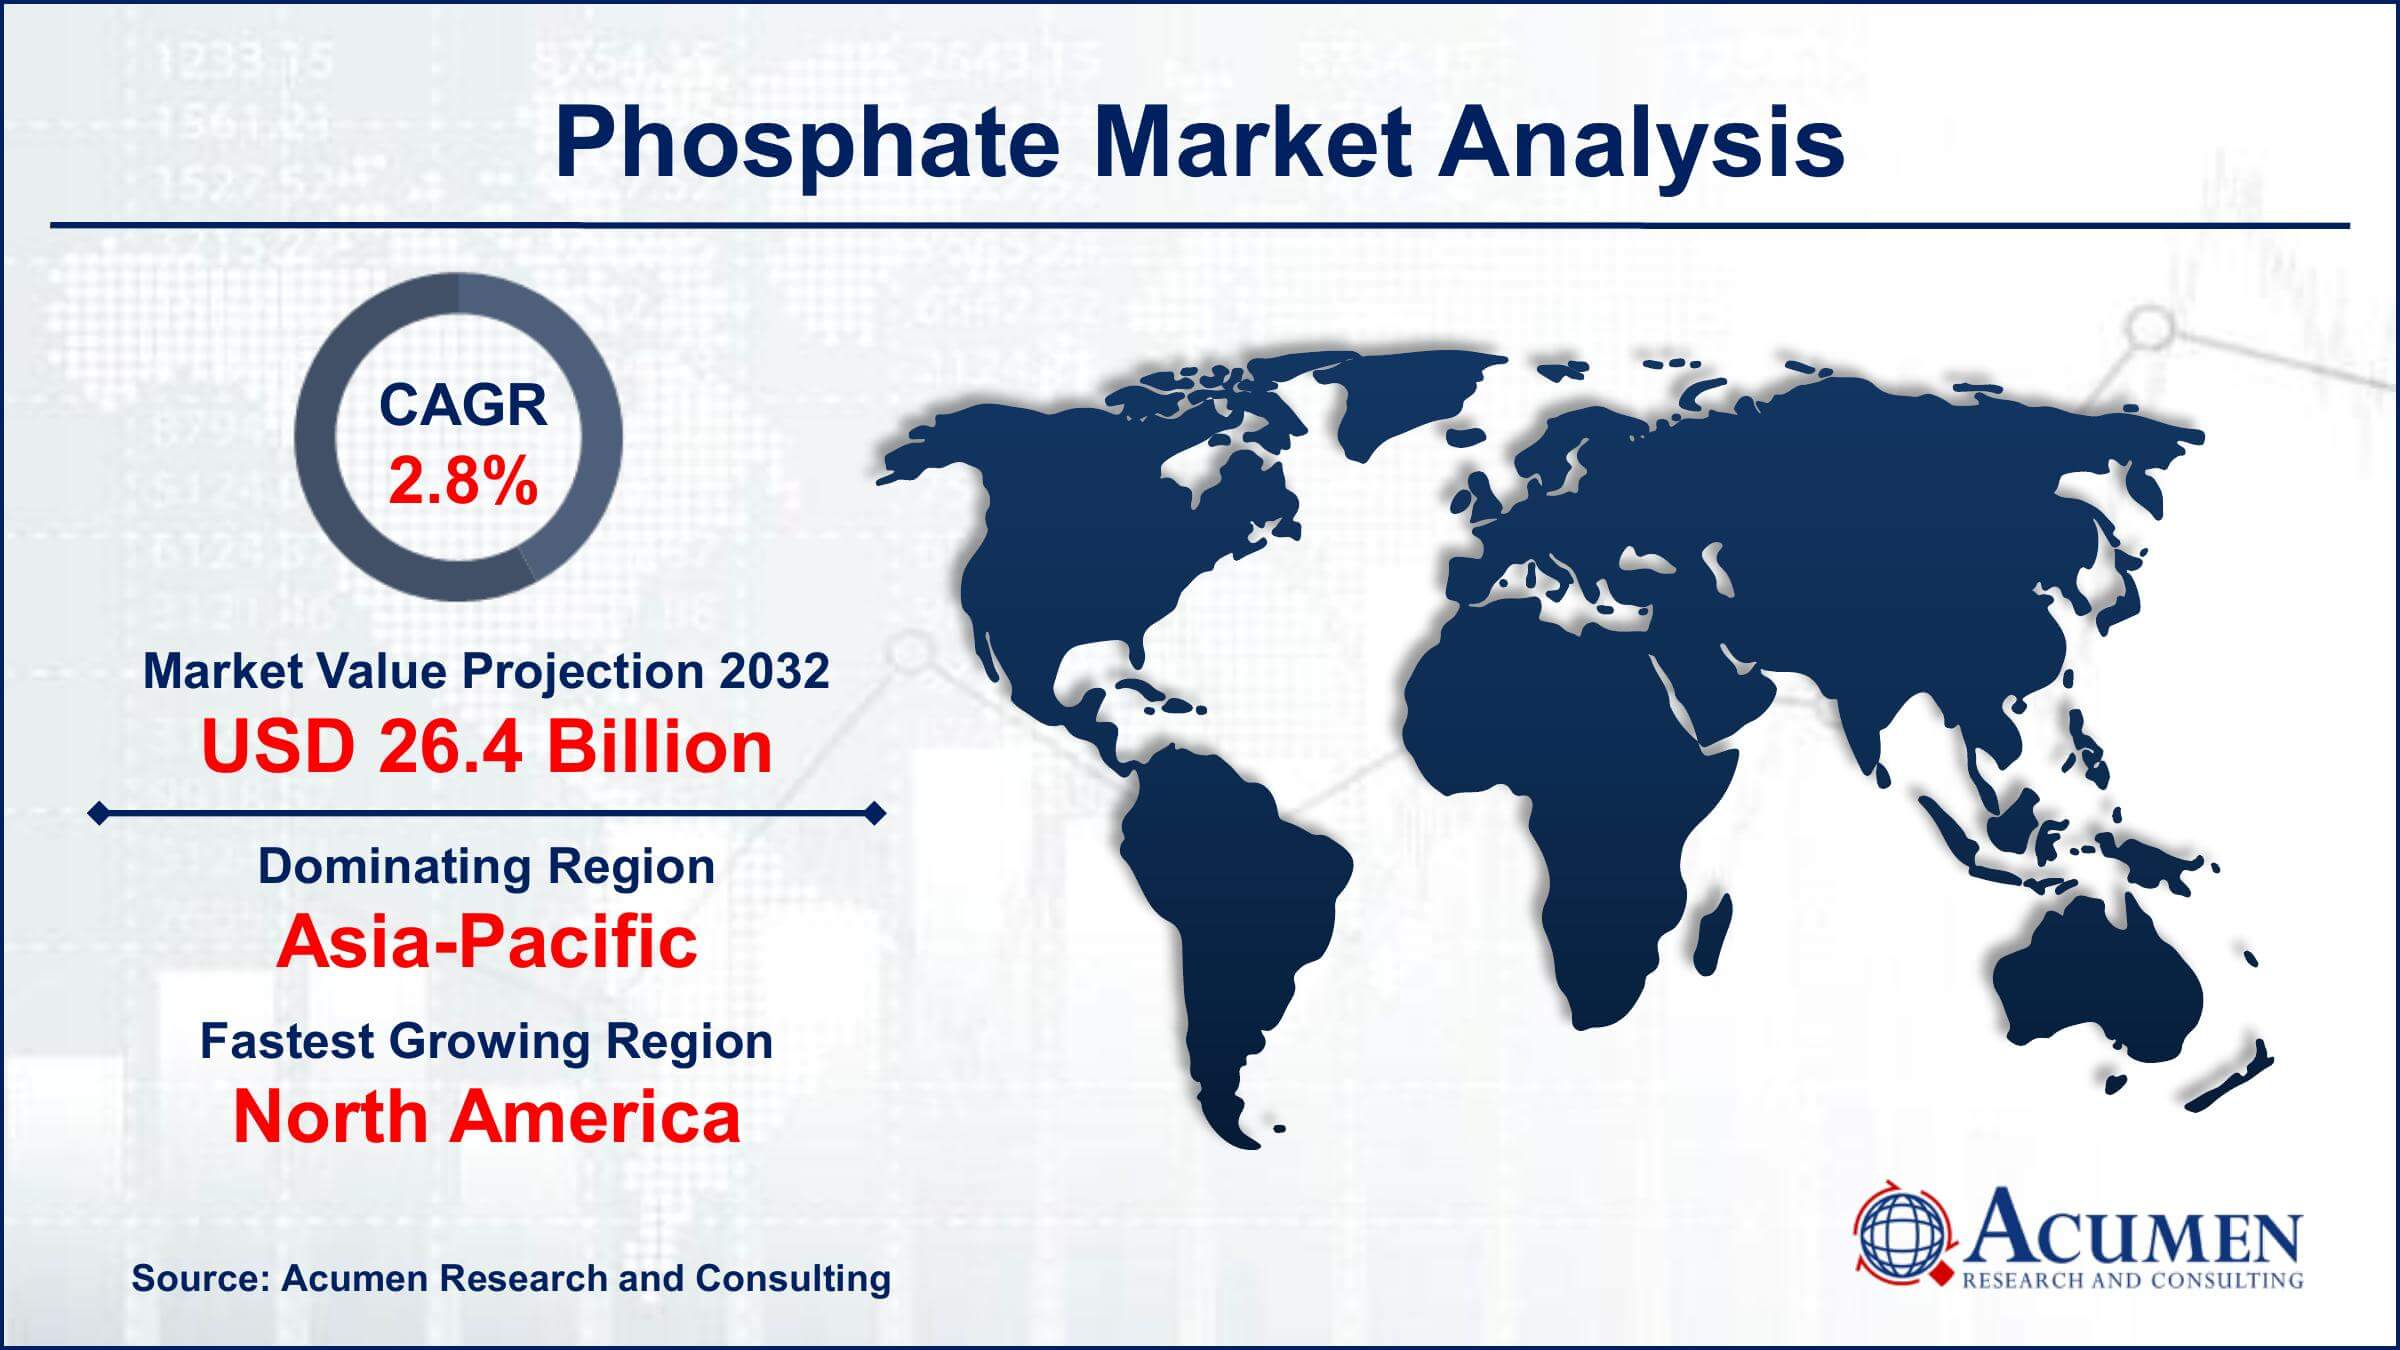 Global Phosphate Market Trends